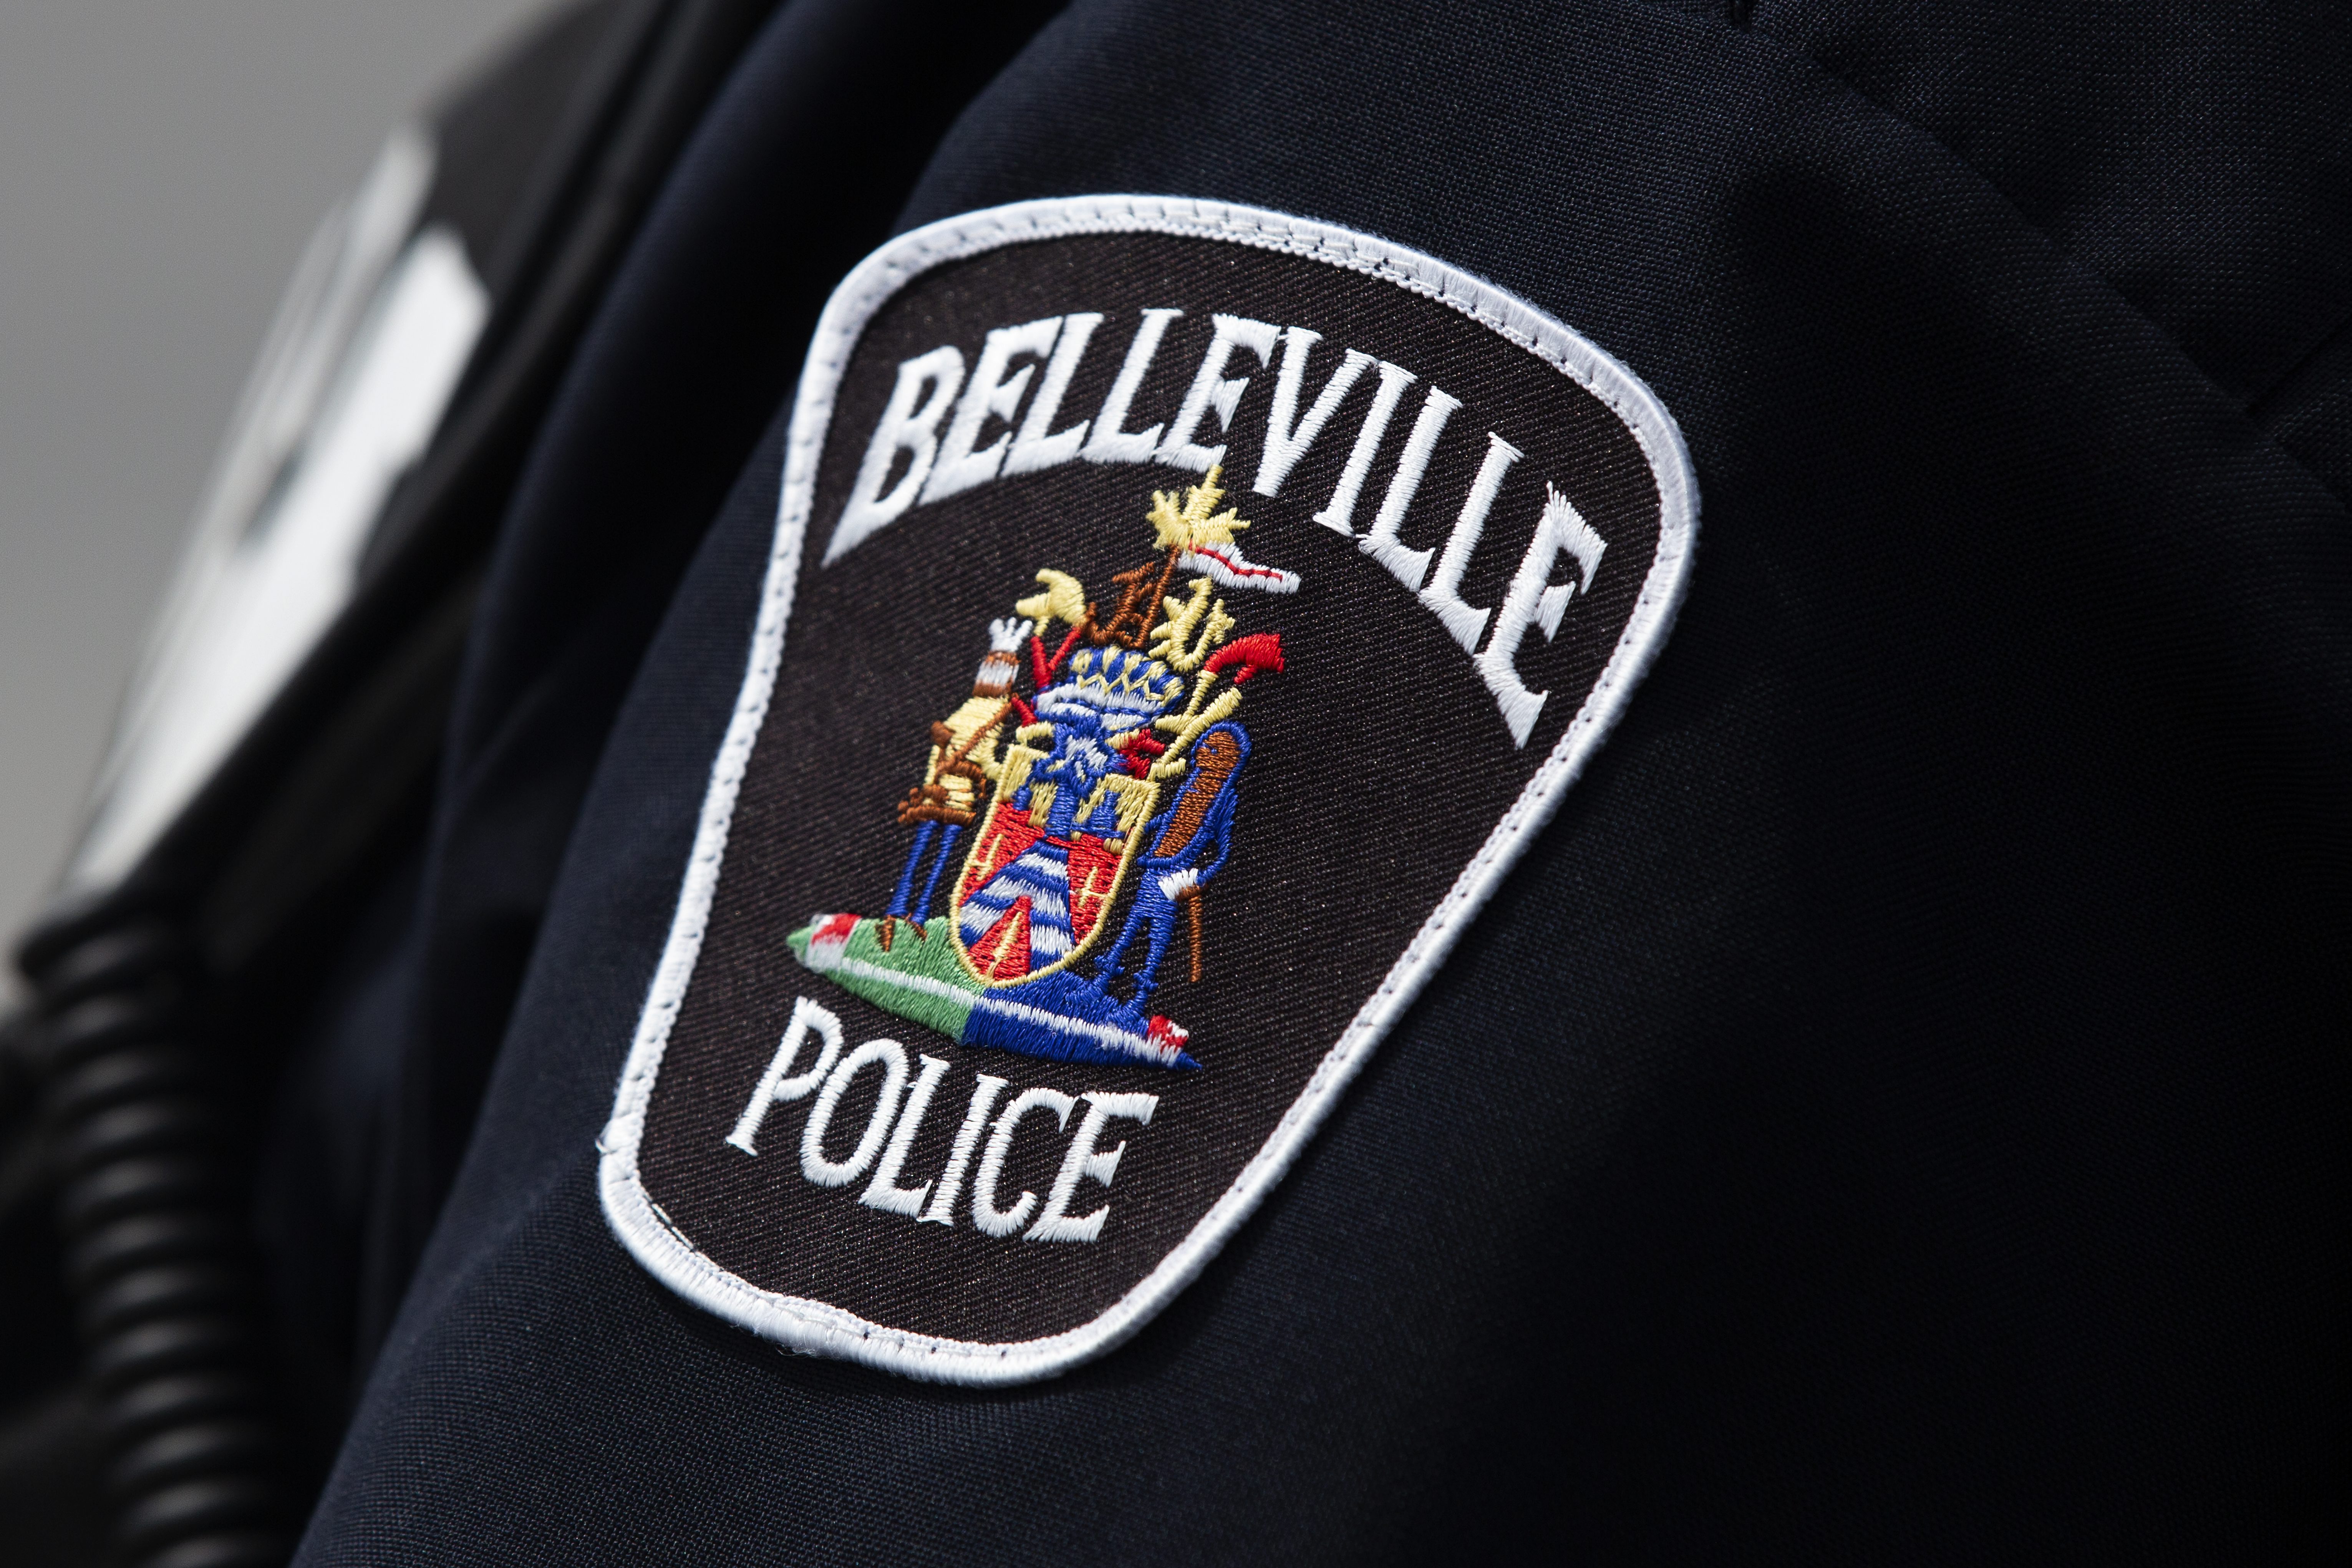 Driver’s medical episode leads to 3-car crash in Belleville: Police